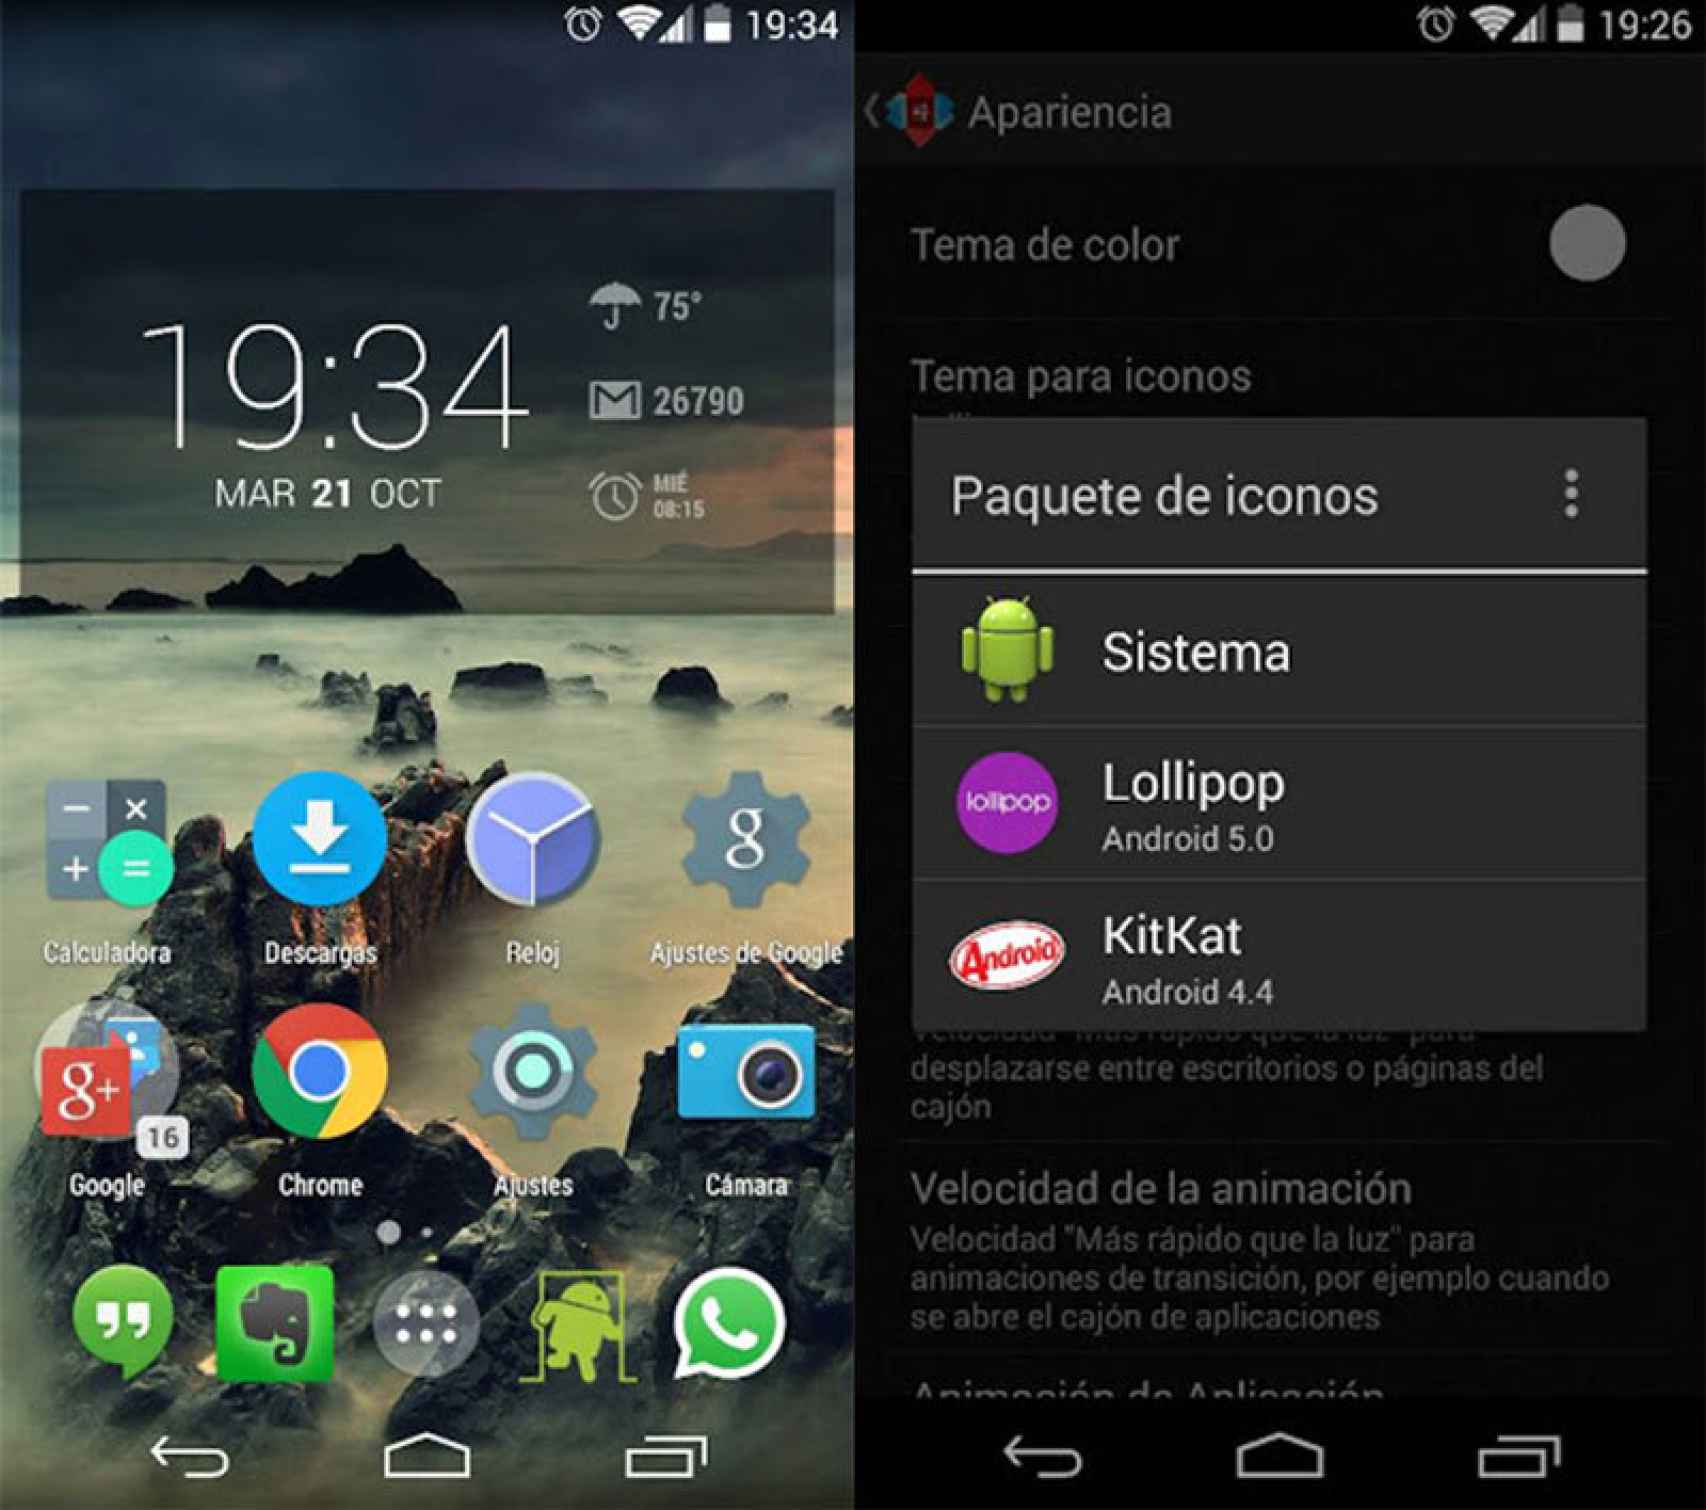 Nova Launcher fue una de esas apps especiales en Android